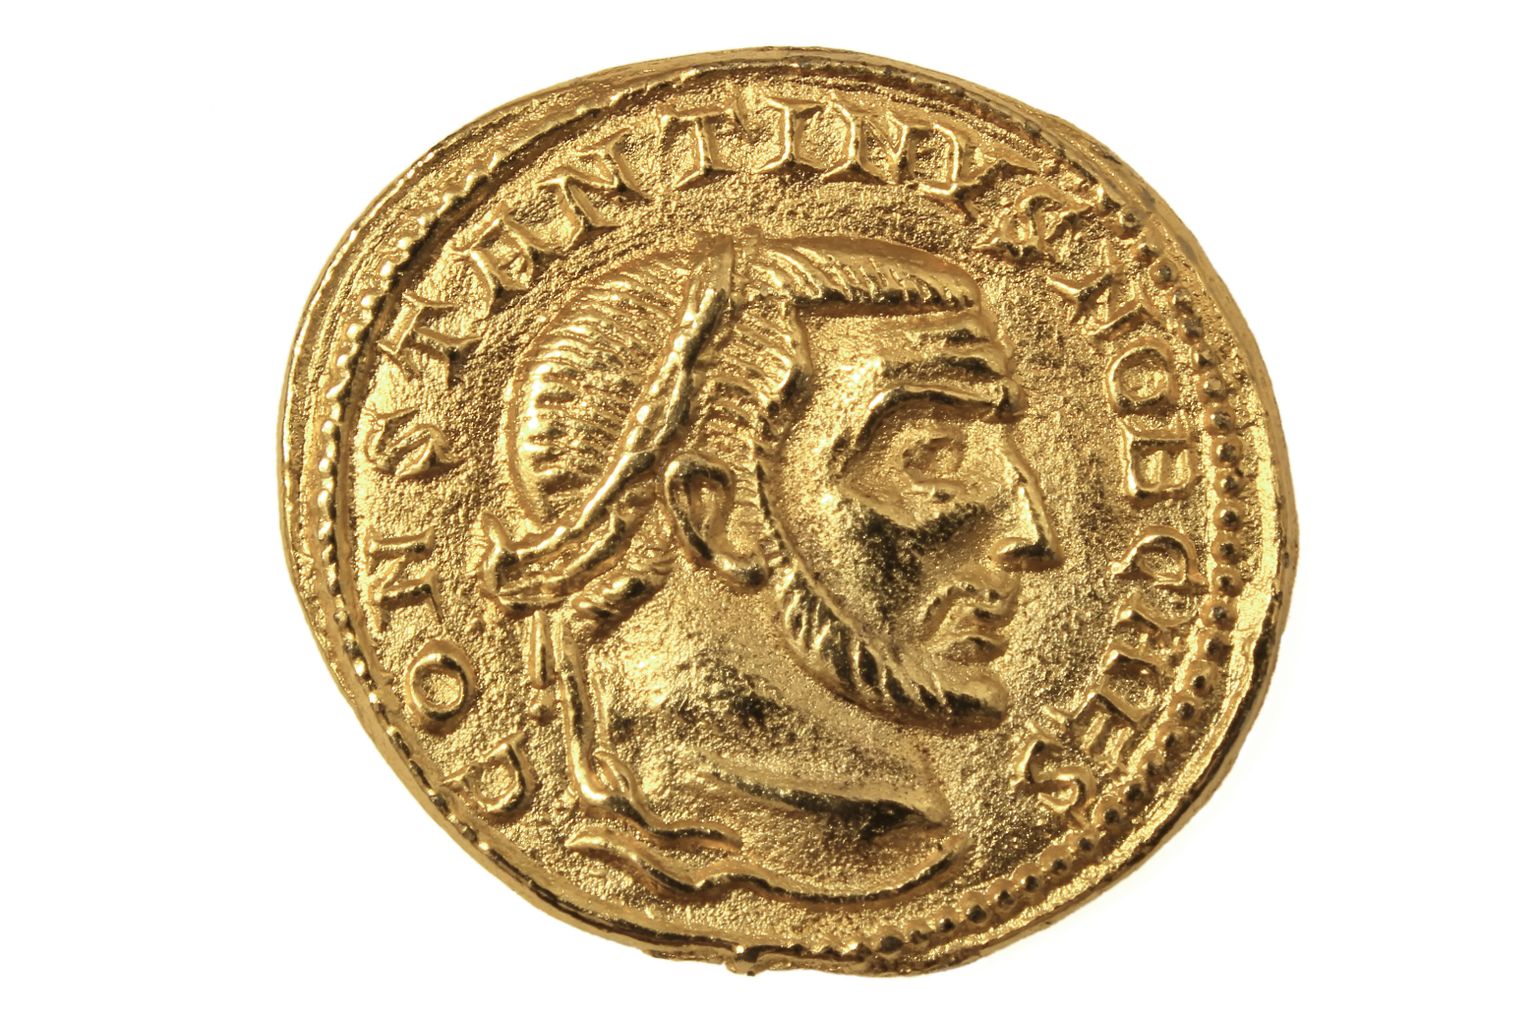 Vana-Rooma kuldmünt. Pilt on illustreeriv